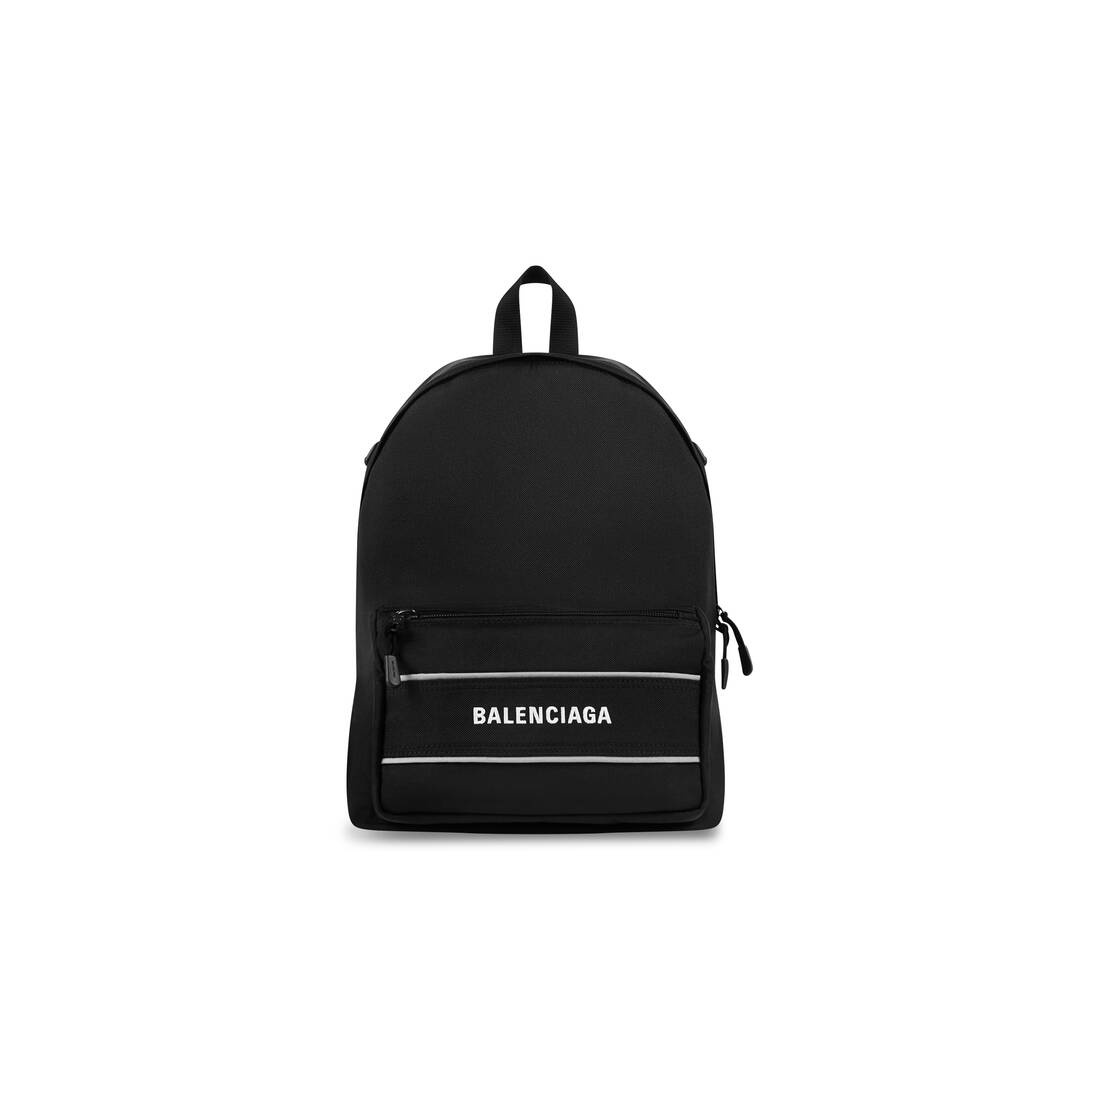 Men's Sport Crossbody Backpack in Black/white - 5